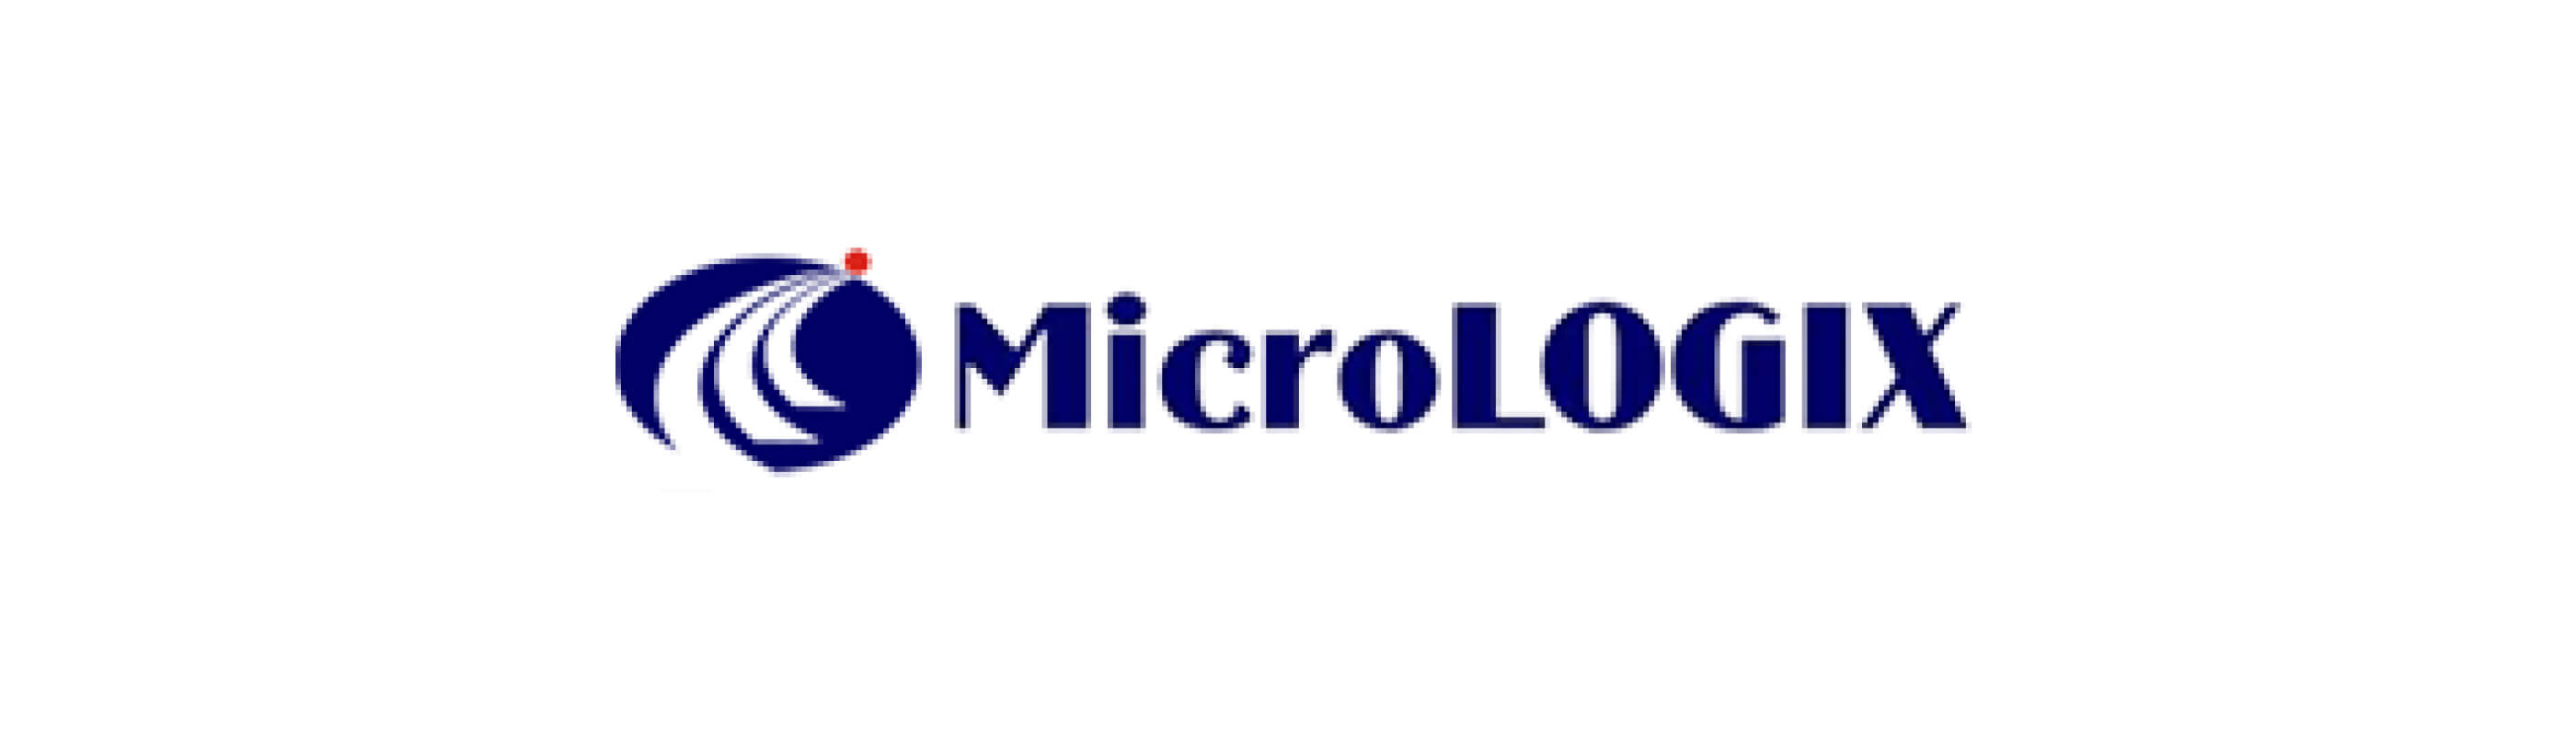 Micrologix logo